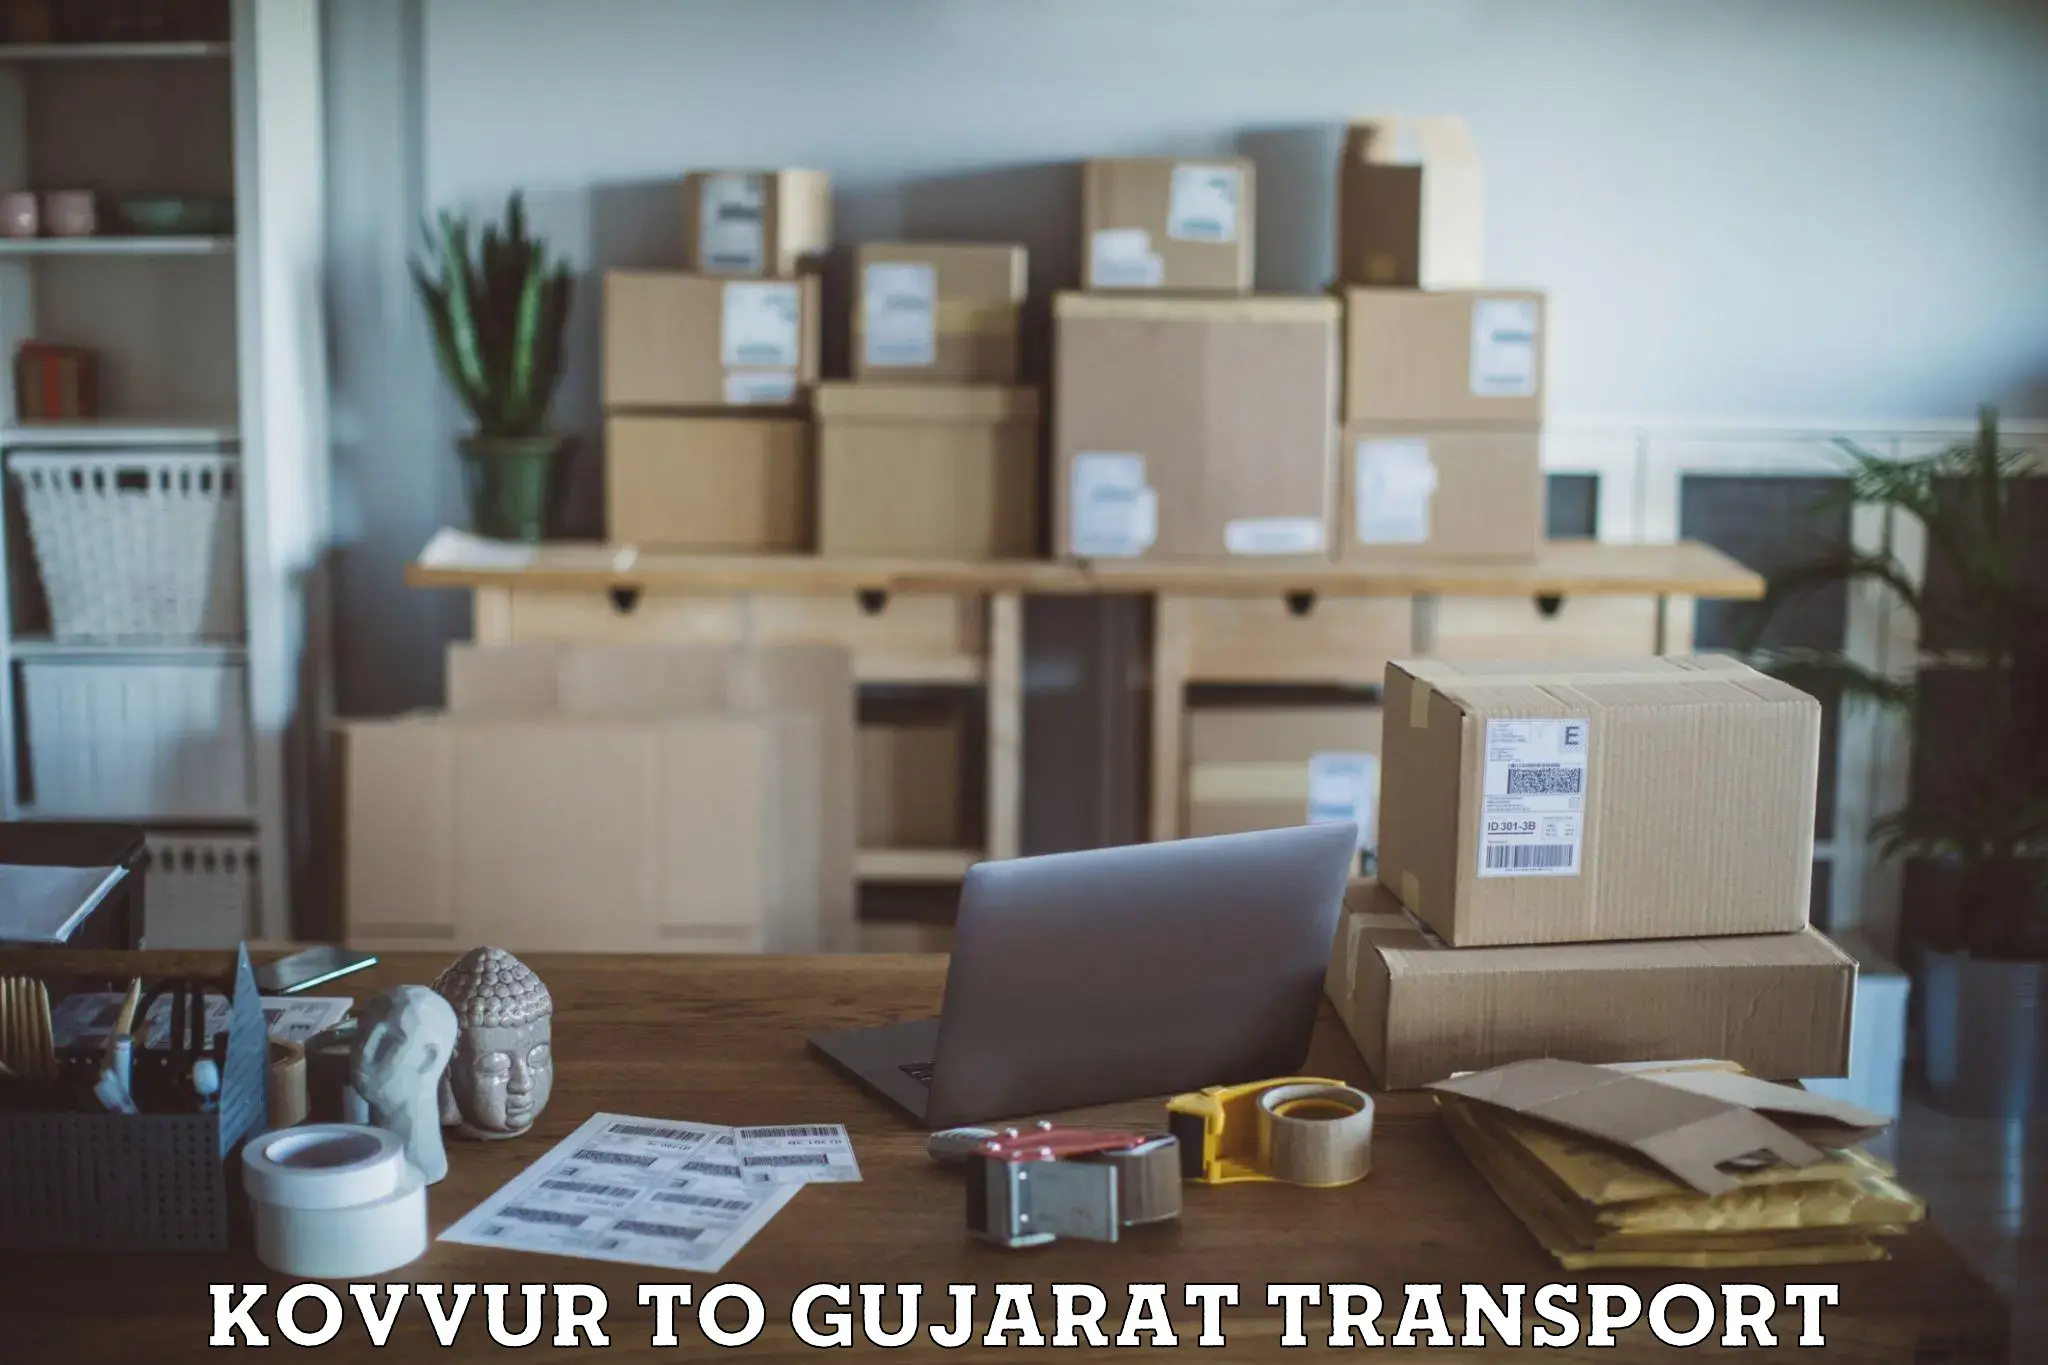 Pick up transport service Kovvur to IIIT Surat